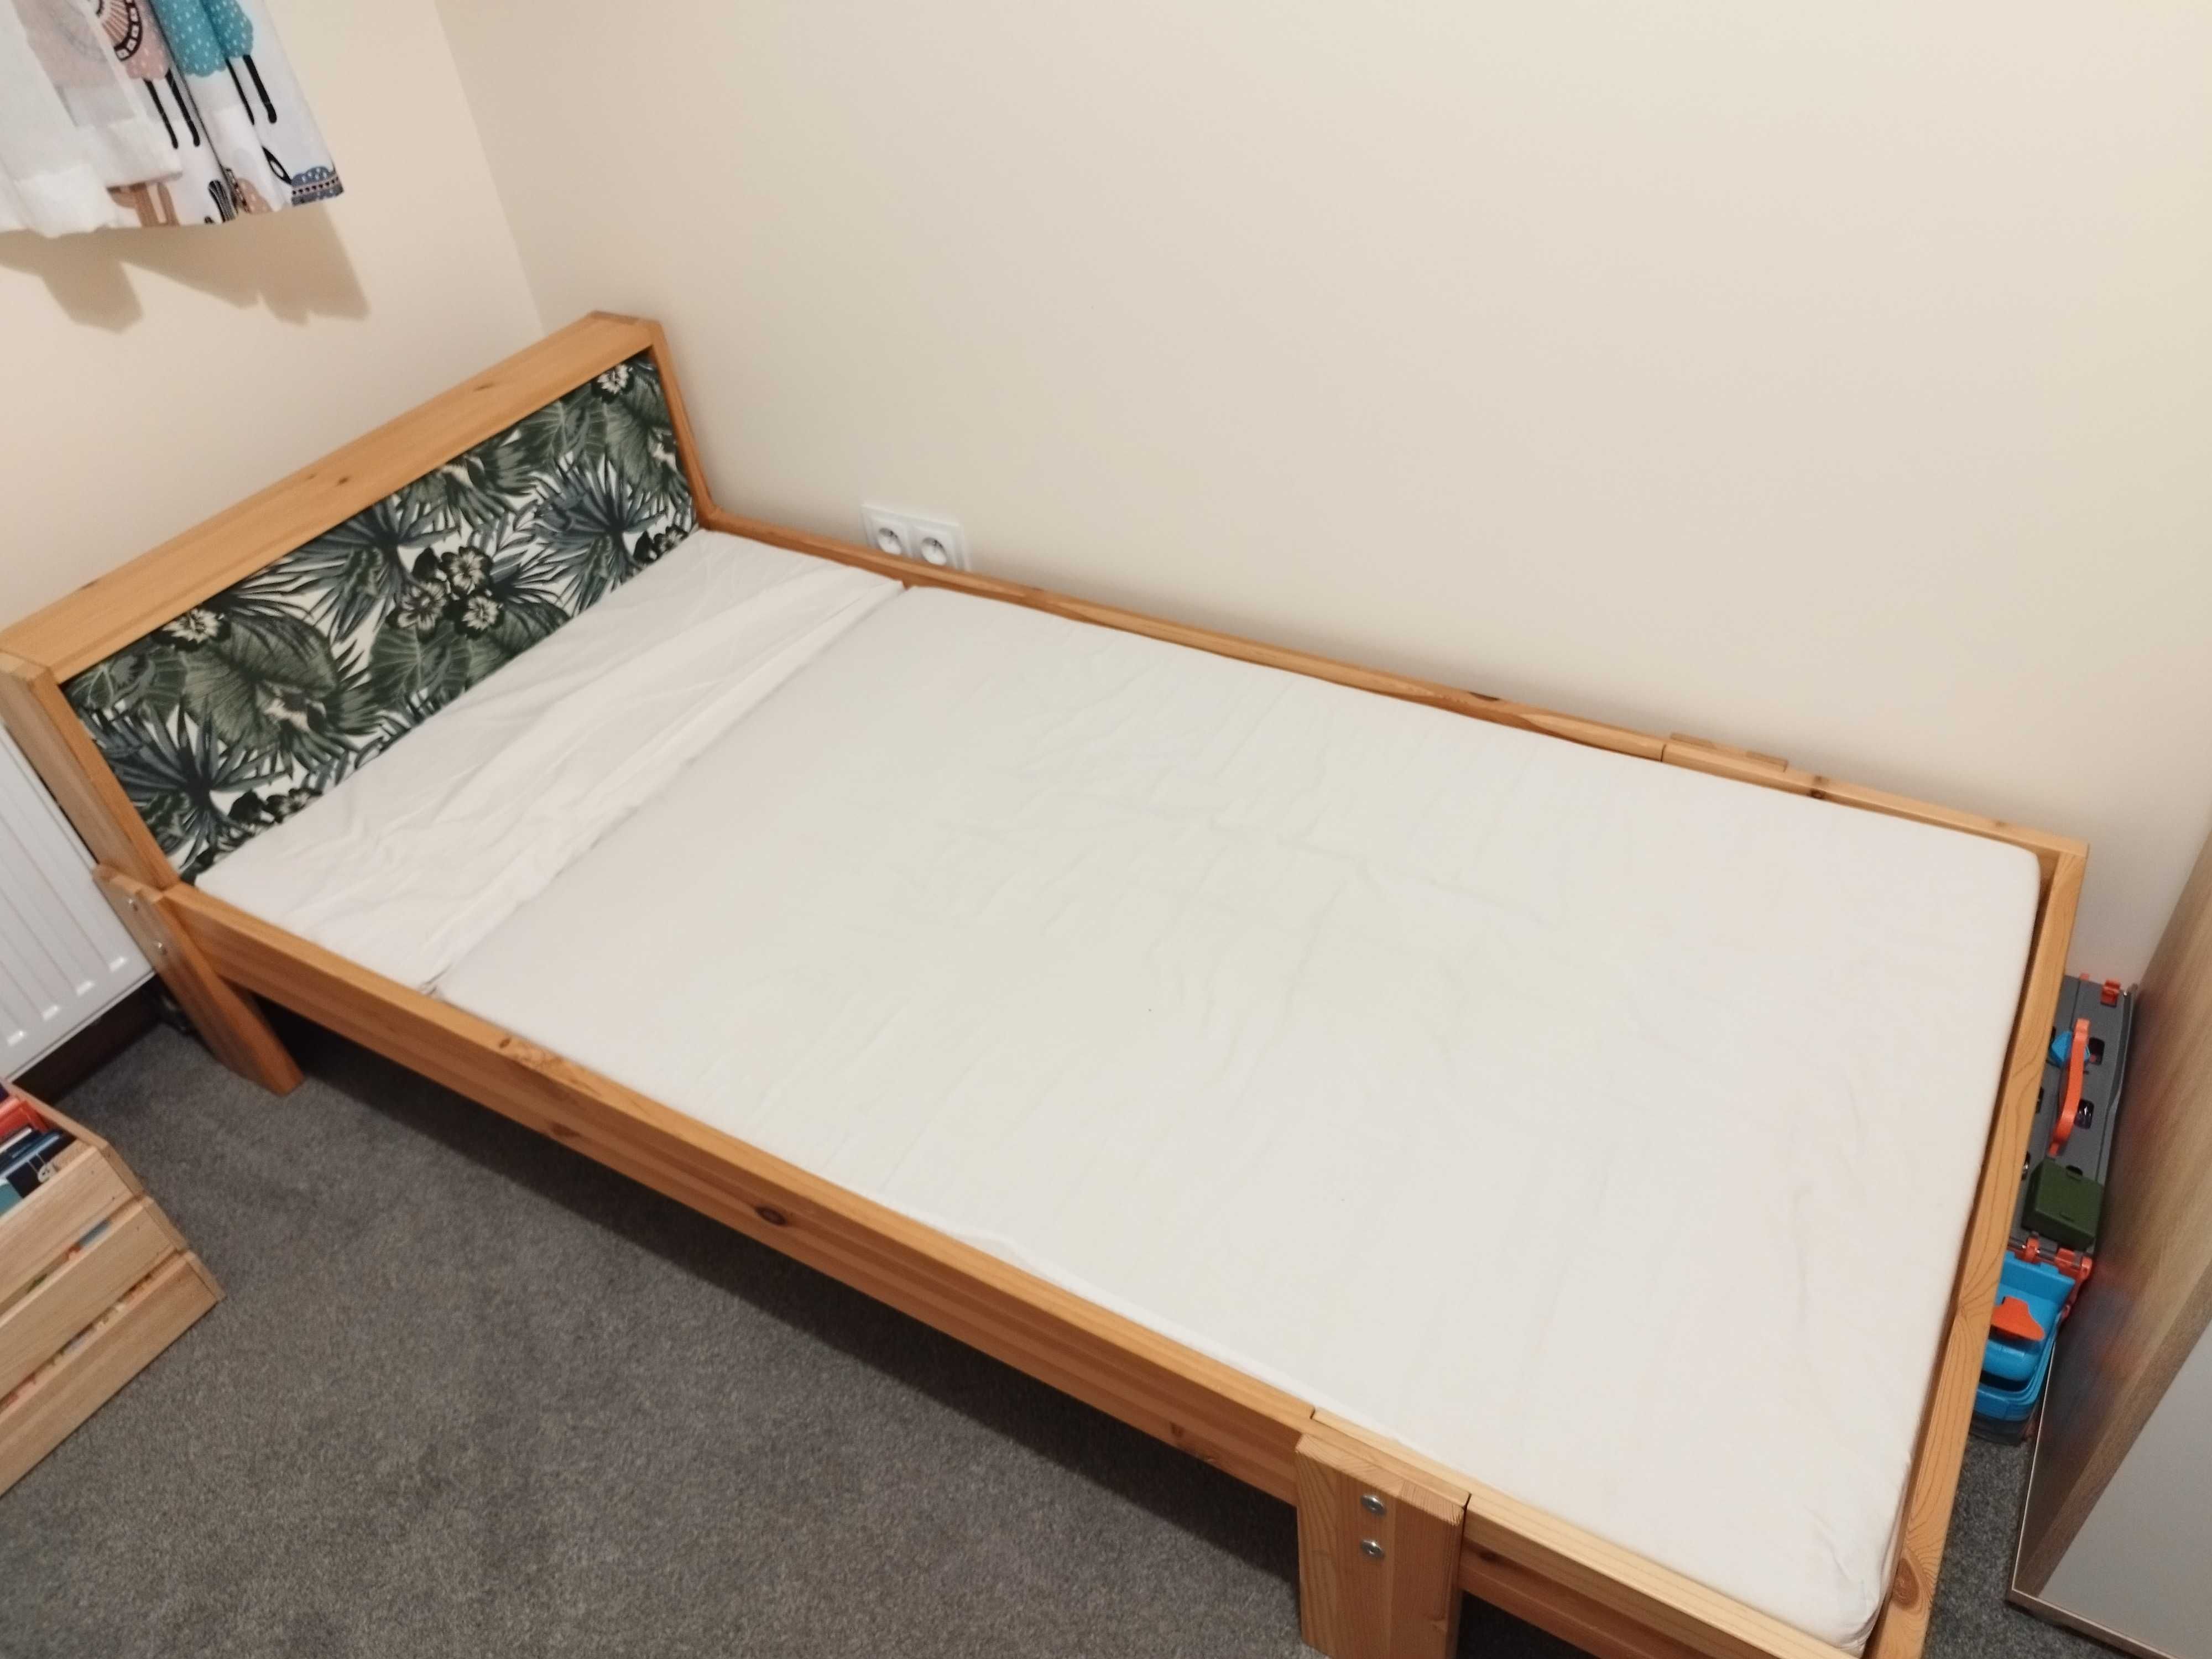 Łóżko drewniane dla dziecka 80x200cm